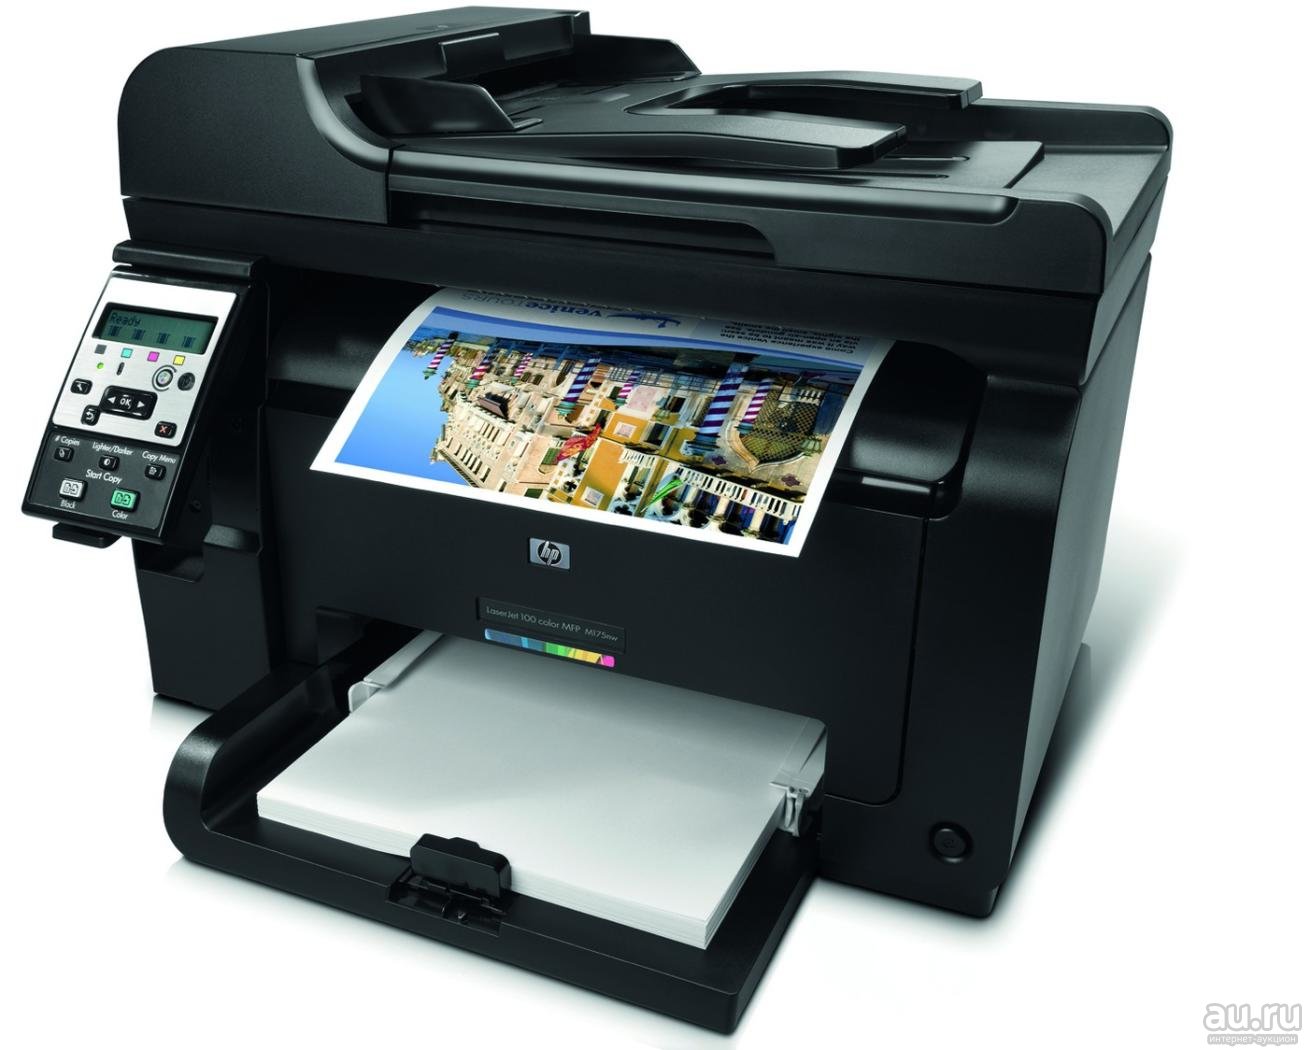 Лазерный принтер для фотографий. LASERJET 100 Color MFP m175nw.